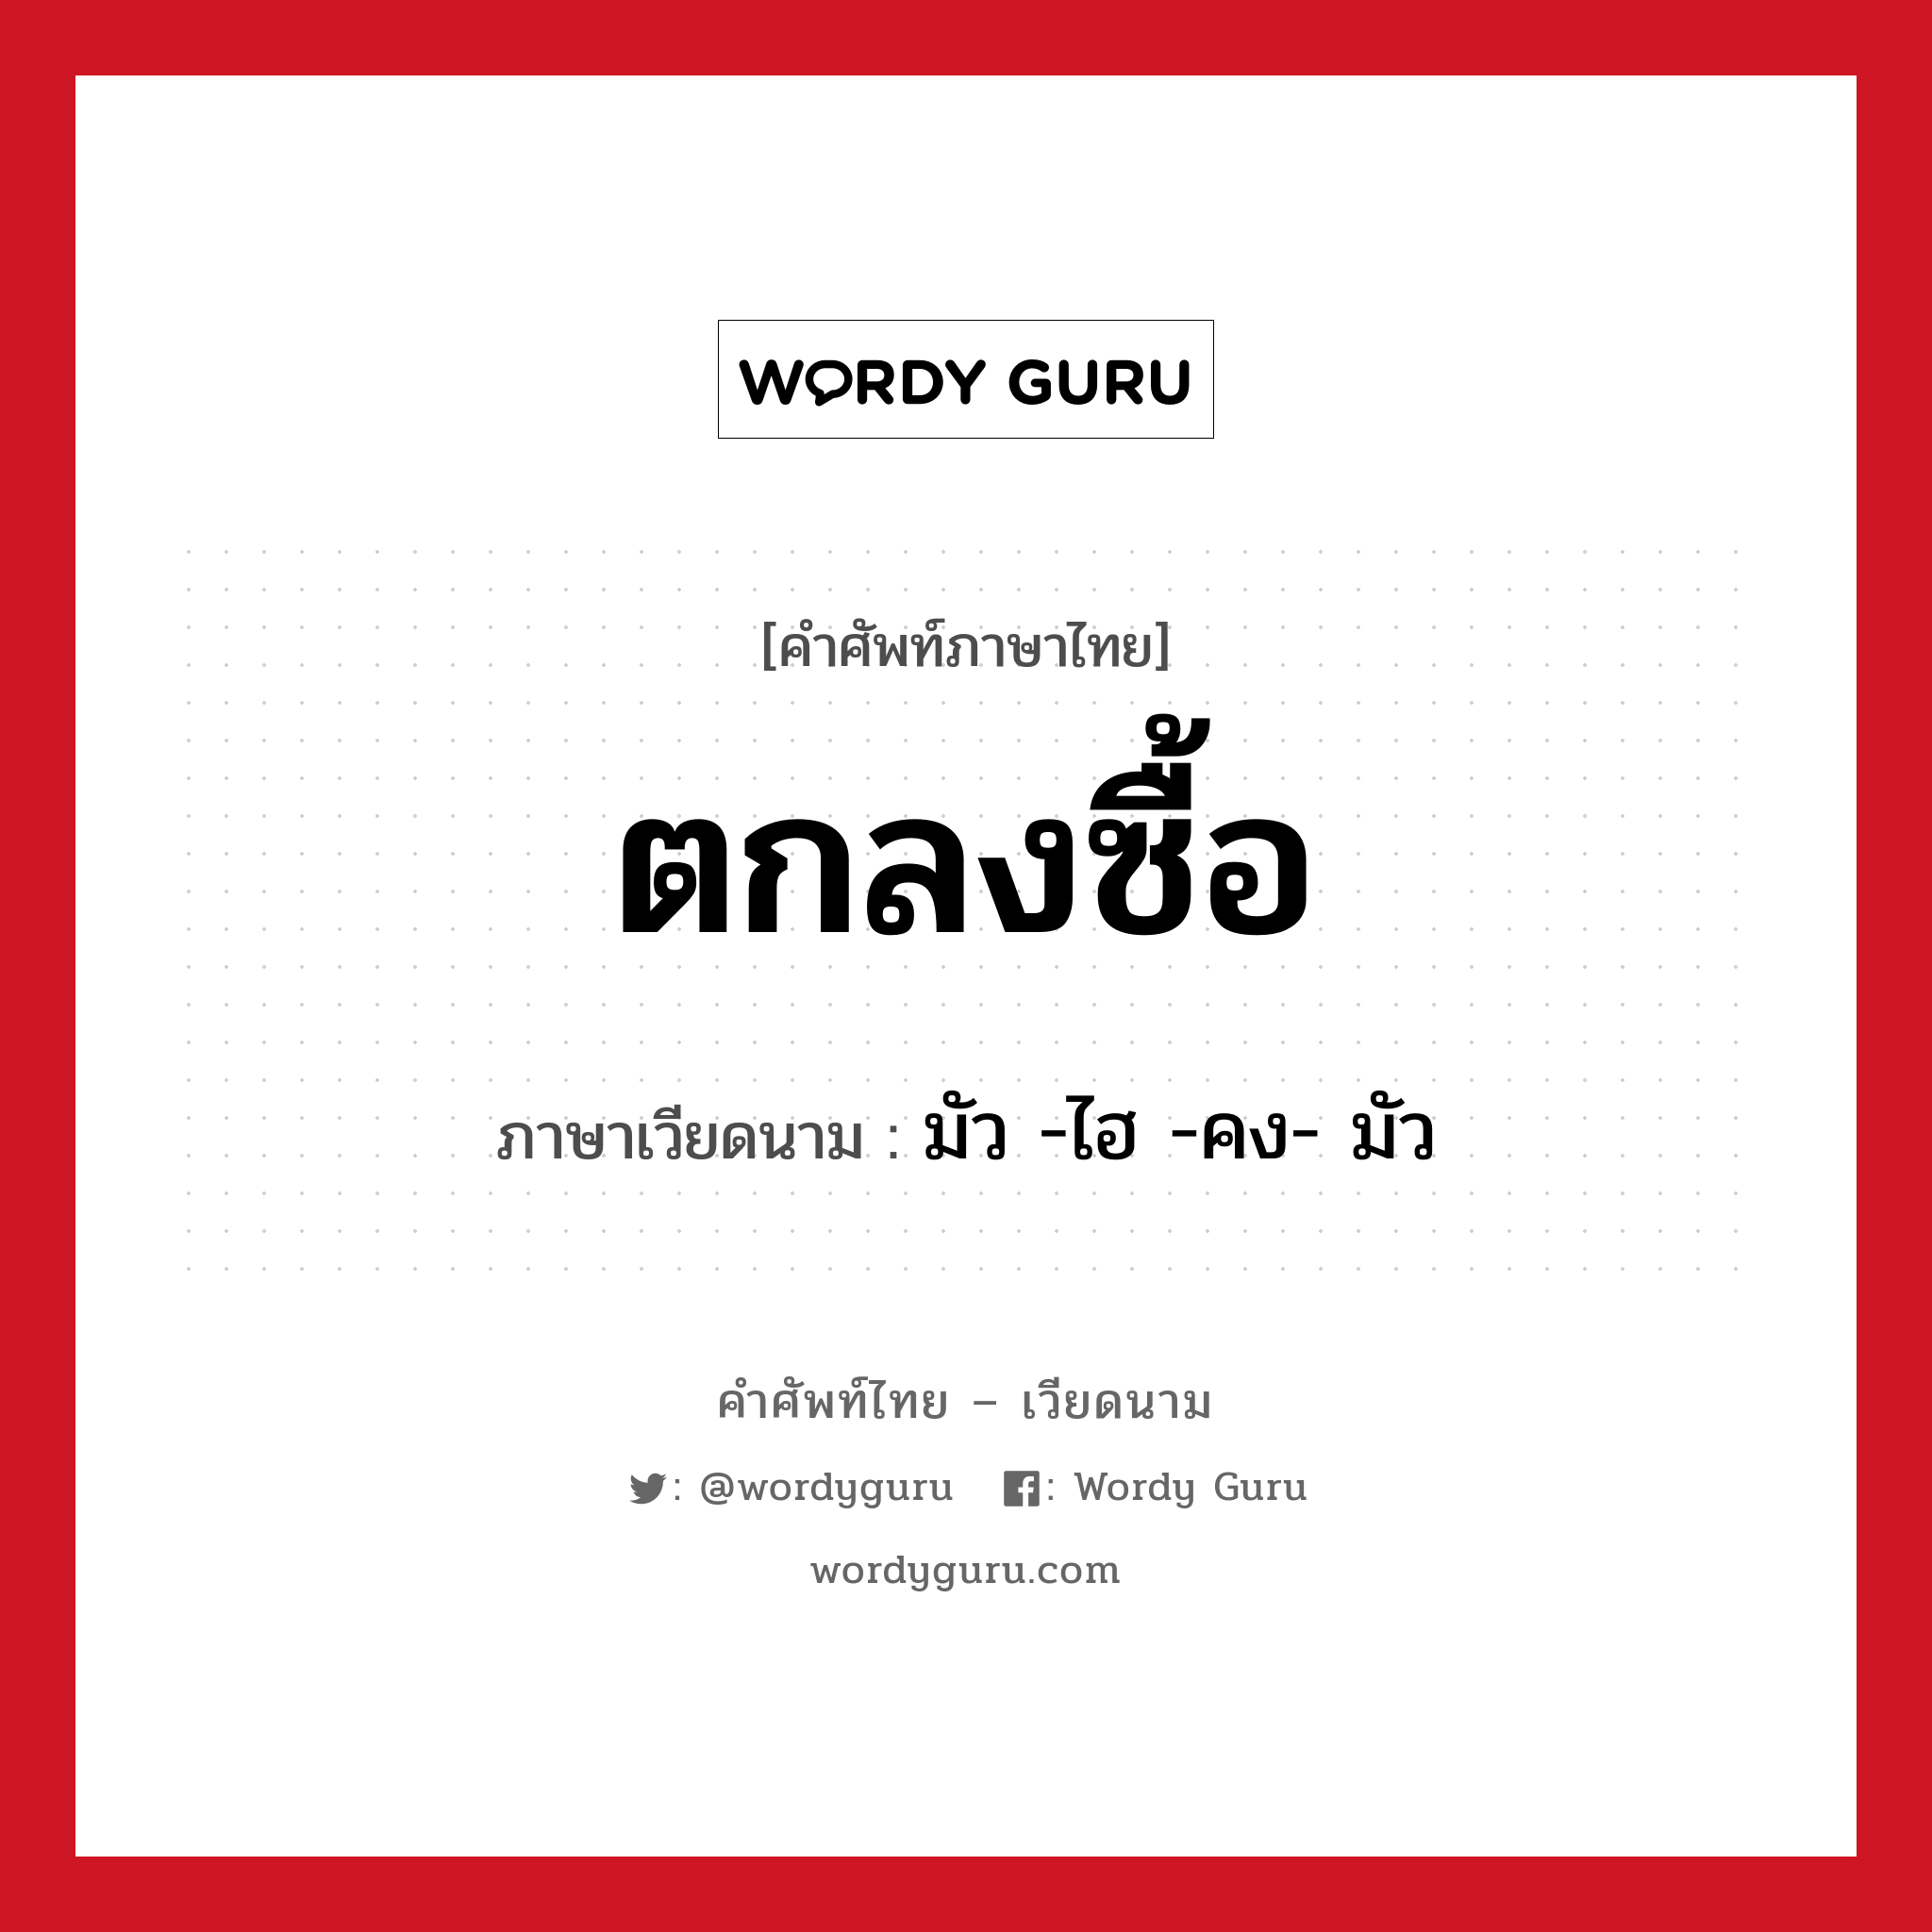 ตกลงซื้อ ภาษาเวียดนามคืออะไร, คำศัพท์ภาษาไทย - เวียดนาม ตกลงซื้อ ภาษาเวียดนาม มัว -ไฮ -คง- มัว หมวด การค้าขาย หมวด การค้าขาย